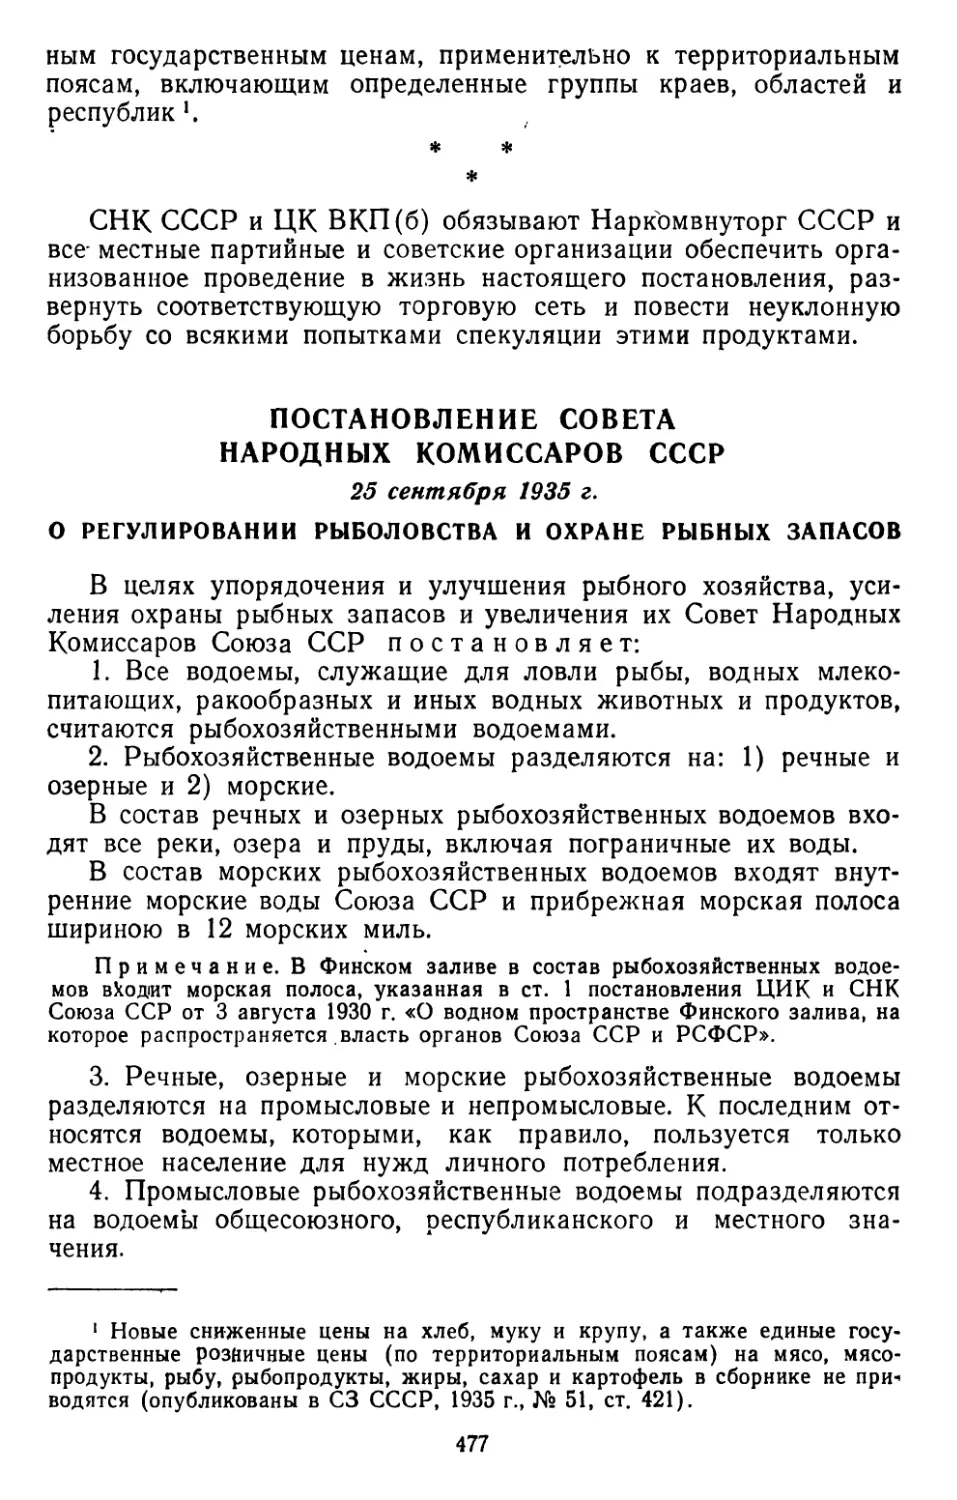 Постановление Совета Народных Комиссаров СССР, 25 сентября 1935  г. О регулировании рыболовства и охране рыбных запасов